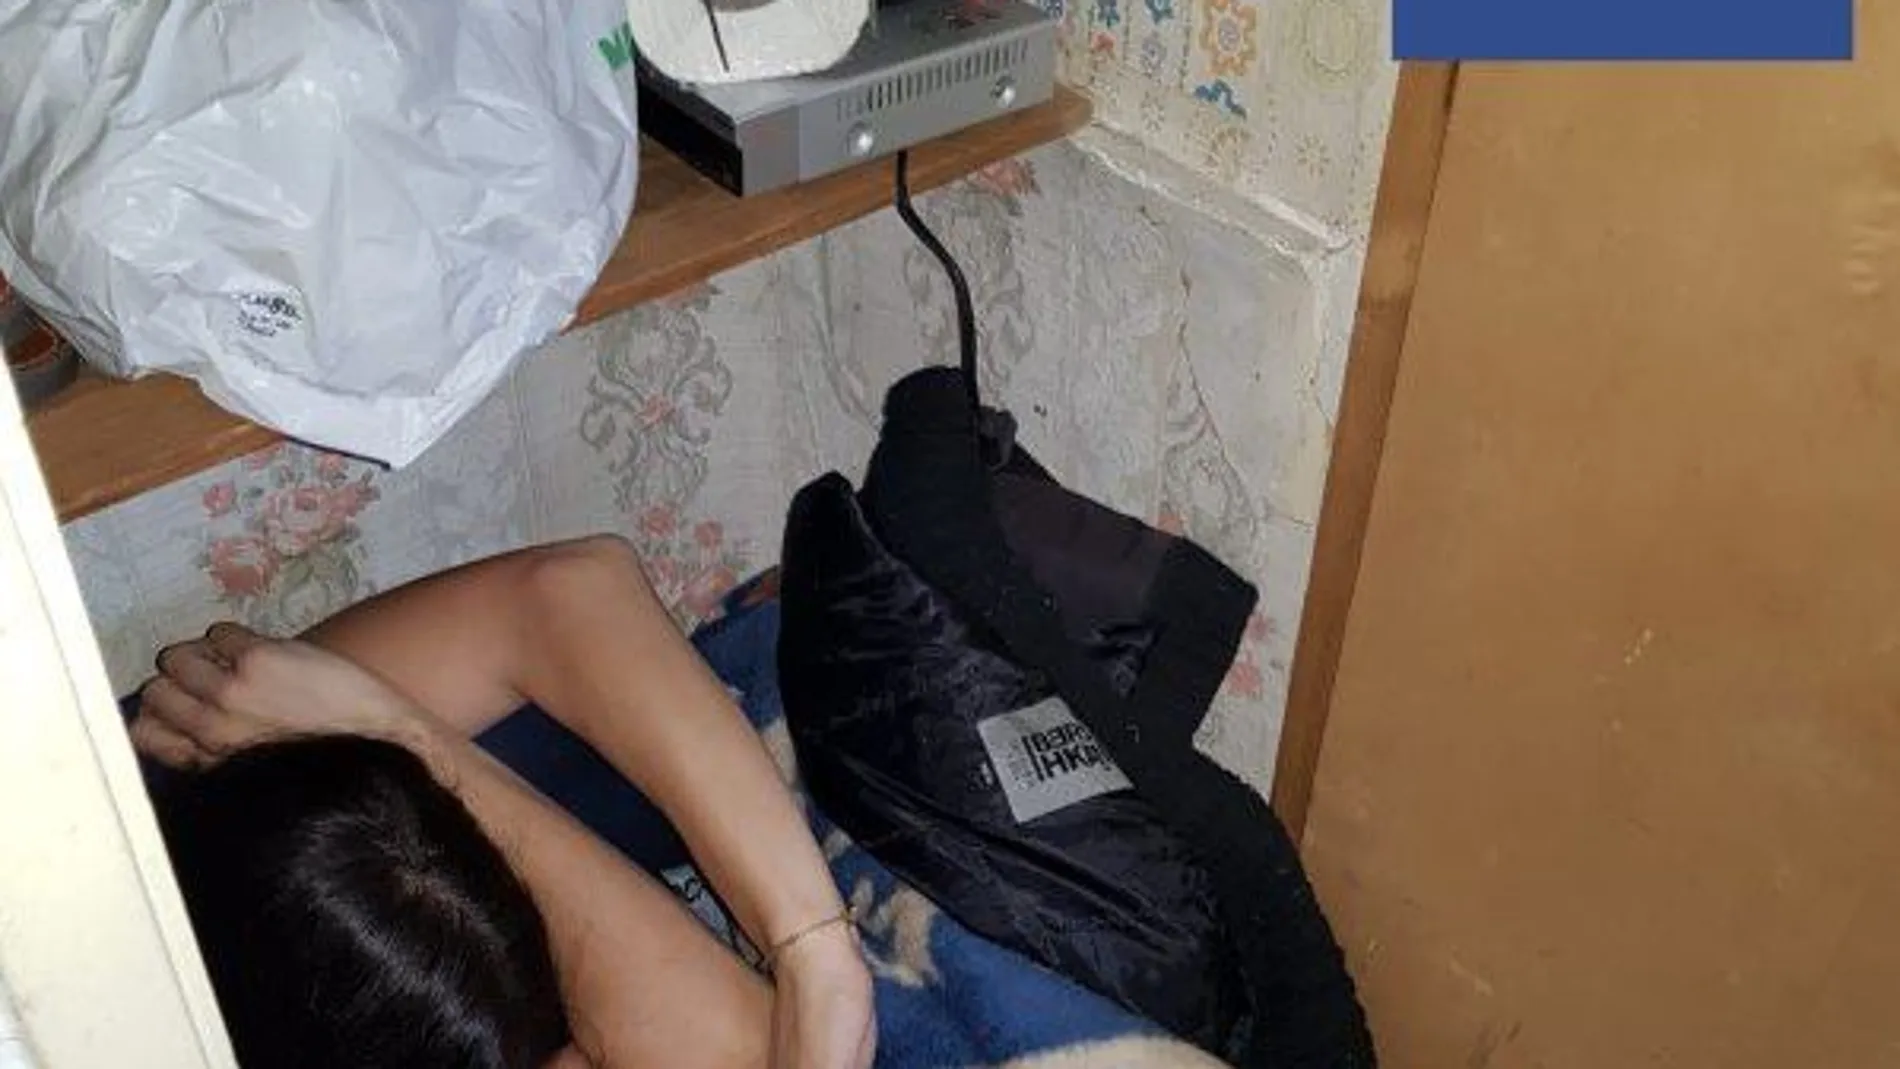 Imagen de la mujer encontrada encerrada en un armario, cubierta de mantas, tras una presunta agresión por violencia machista en el barrio de El Carmen, de Murcia